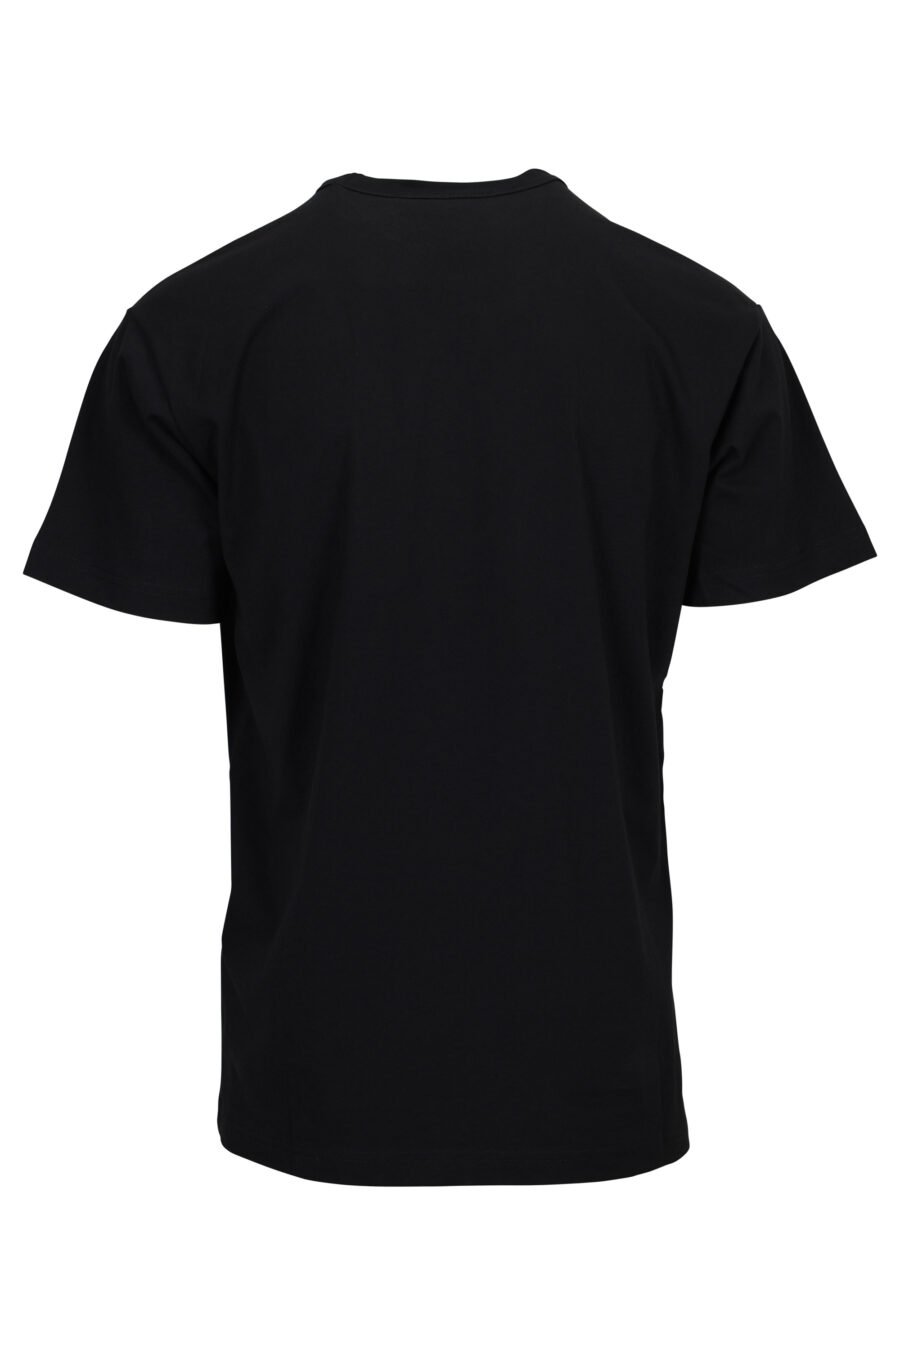 Camiseta negra con maxilogo barroco rasgado - 8052019603170 1